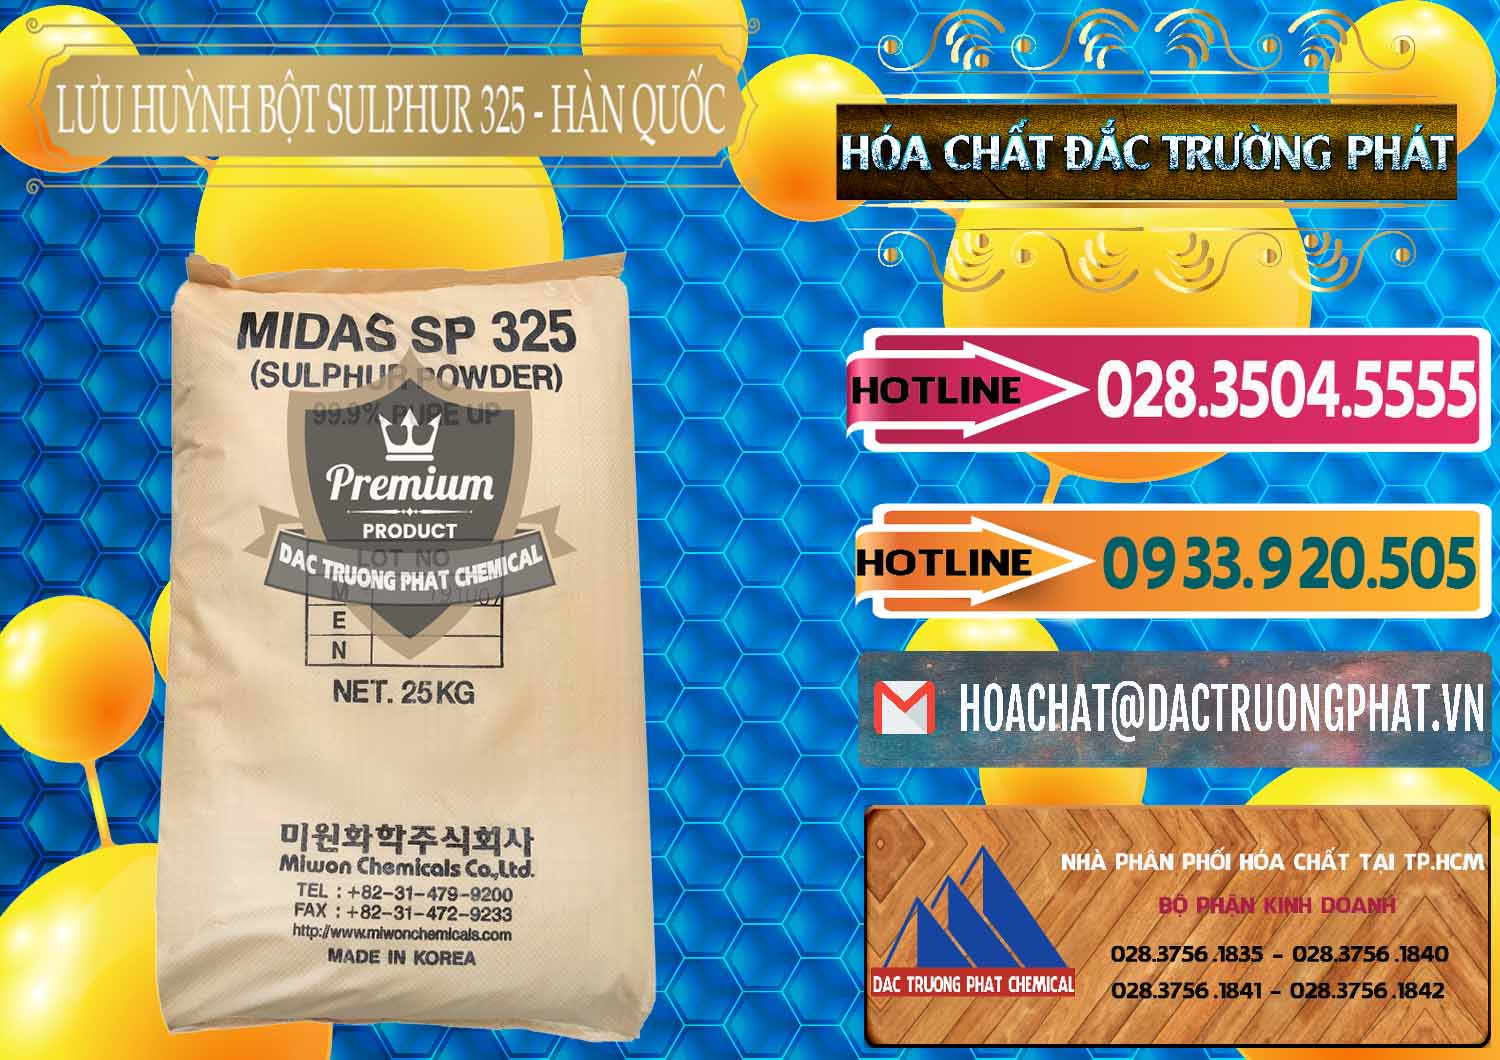 Chuyên phân phối - bán Lưu huỳnh Bột - Sulfur Powder Midas SP 325 Hàn Quốc Korea - 0198 - Công ty bán & cung cấp hóa chất tại TP.HCM - dactruongphat.vn